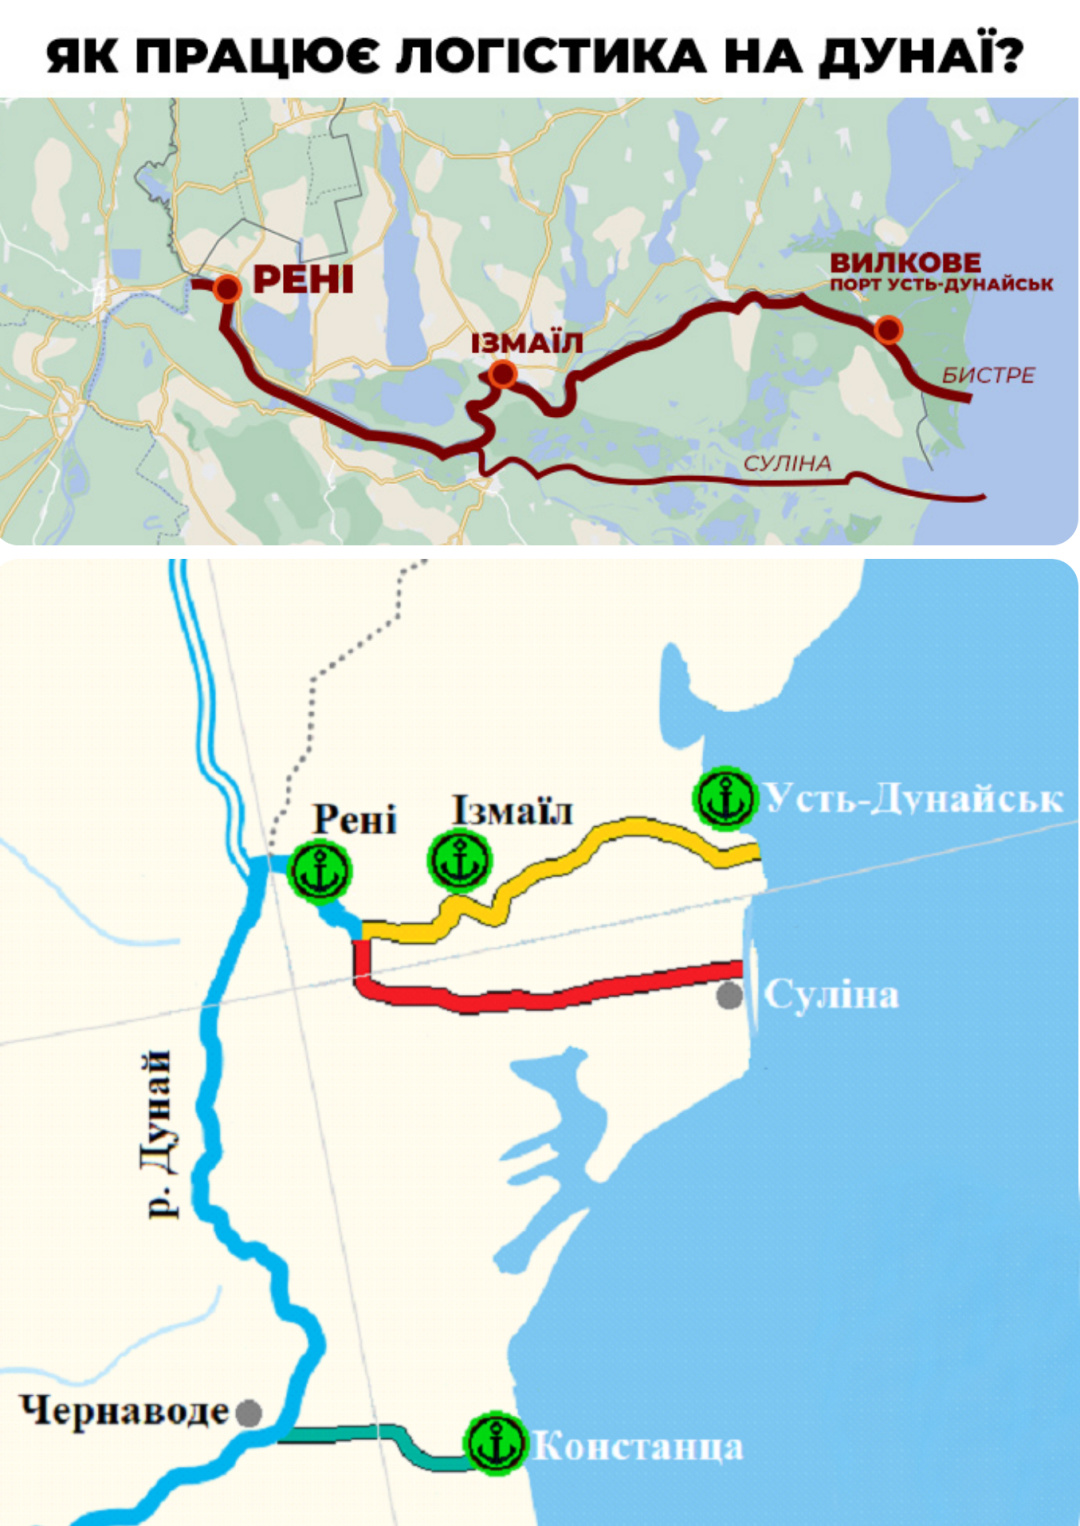 Дунай може стати планом "Б", якщо кордон із Польщою повністю закриється для торгівлі